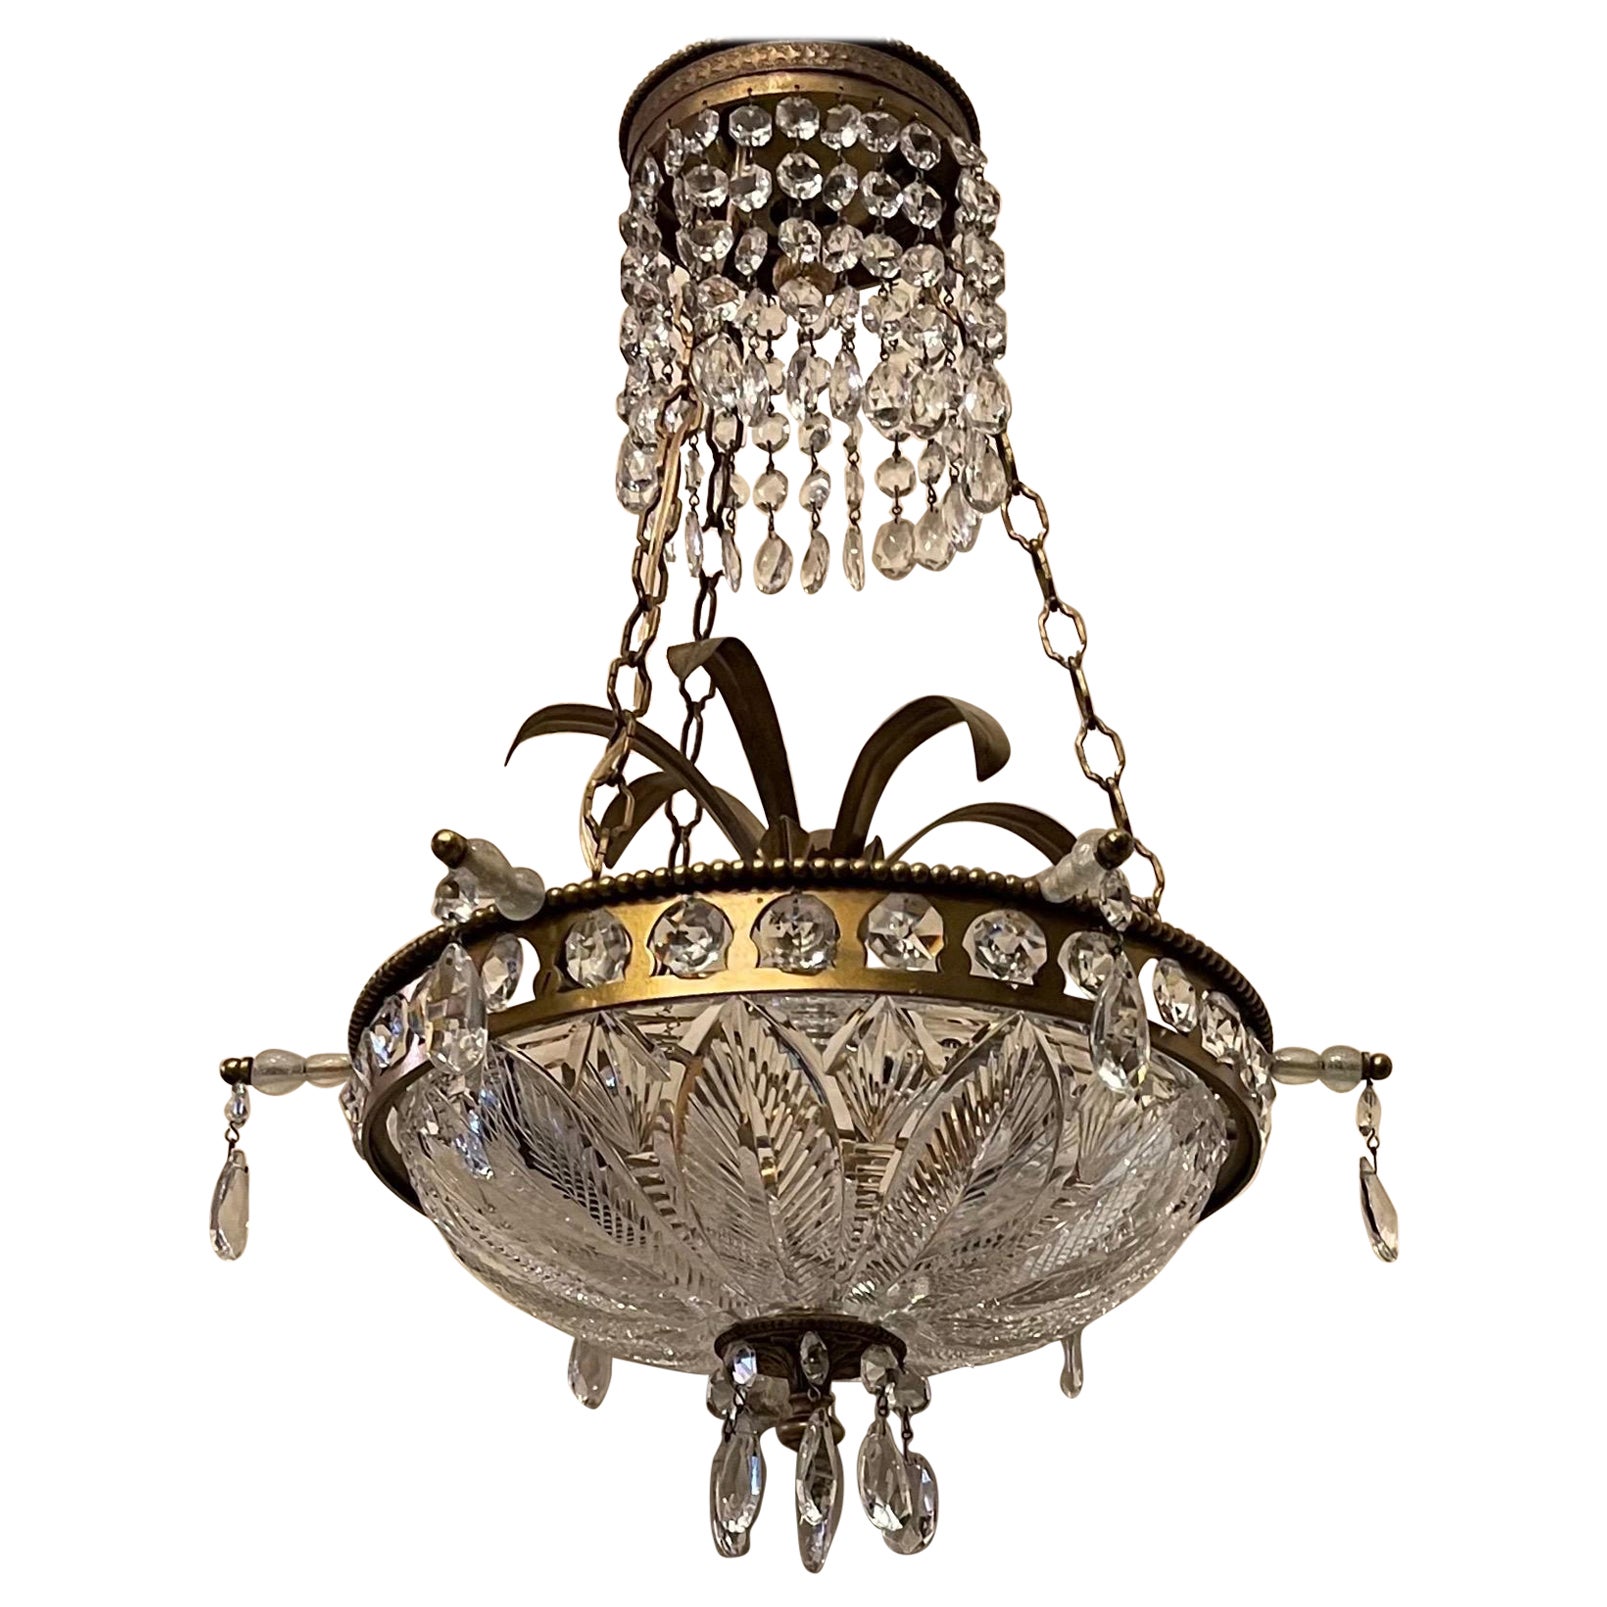 Merveilleux lustre néoclassique gravé en forme de bol en bronze et cristal taillé, luminaire en bronze doré